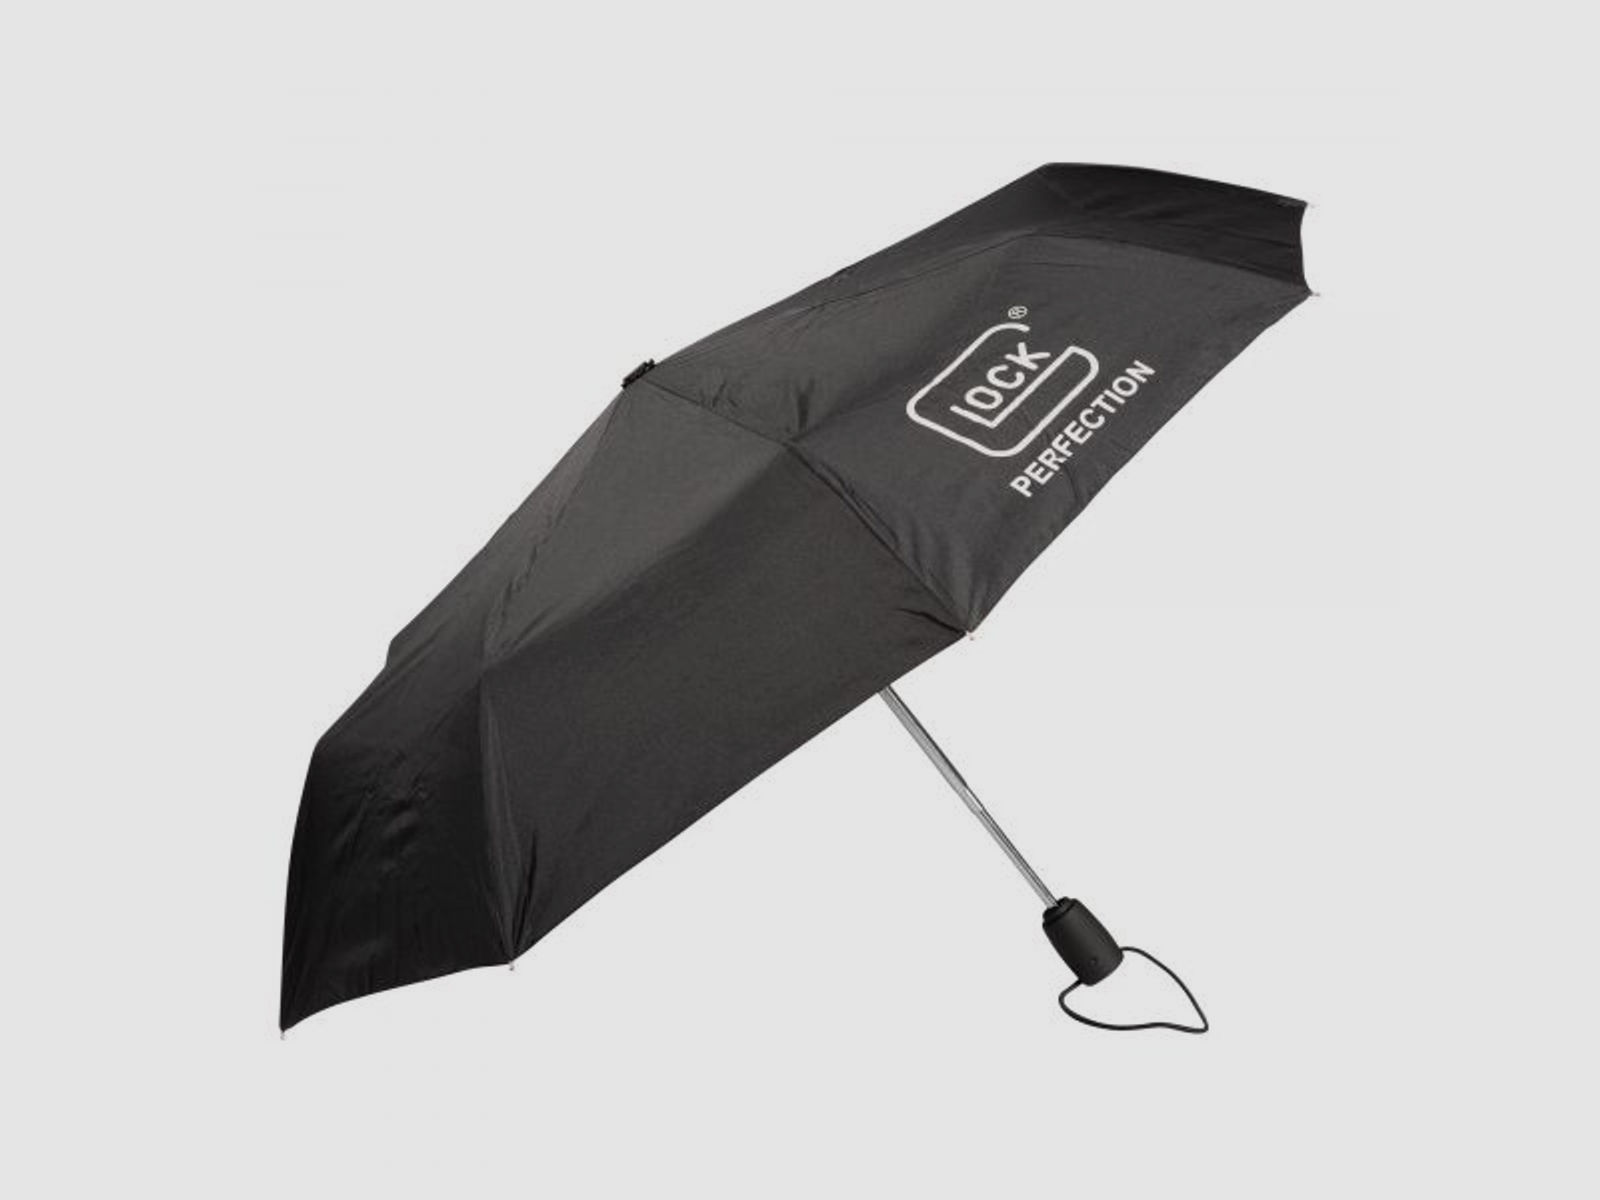 Glock Glock Regenschirm Telescopic Umbrella schwarz